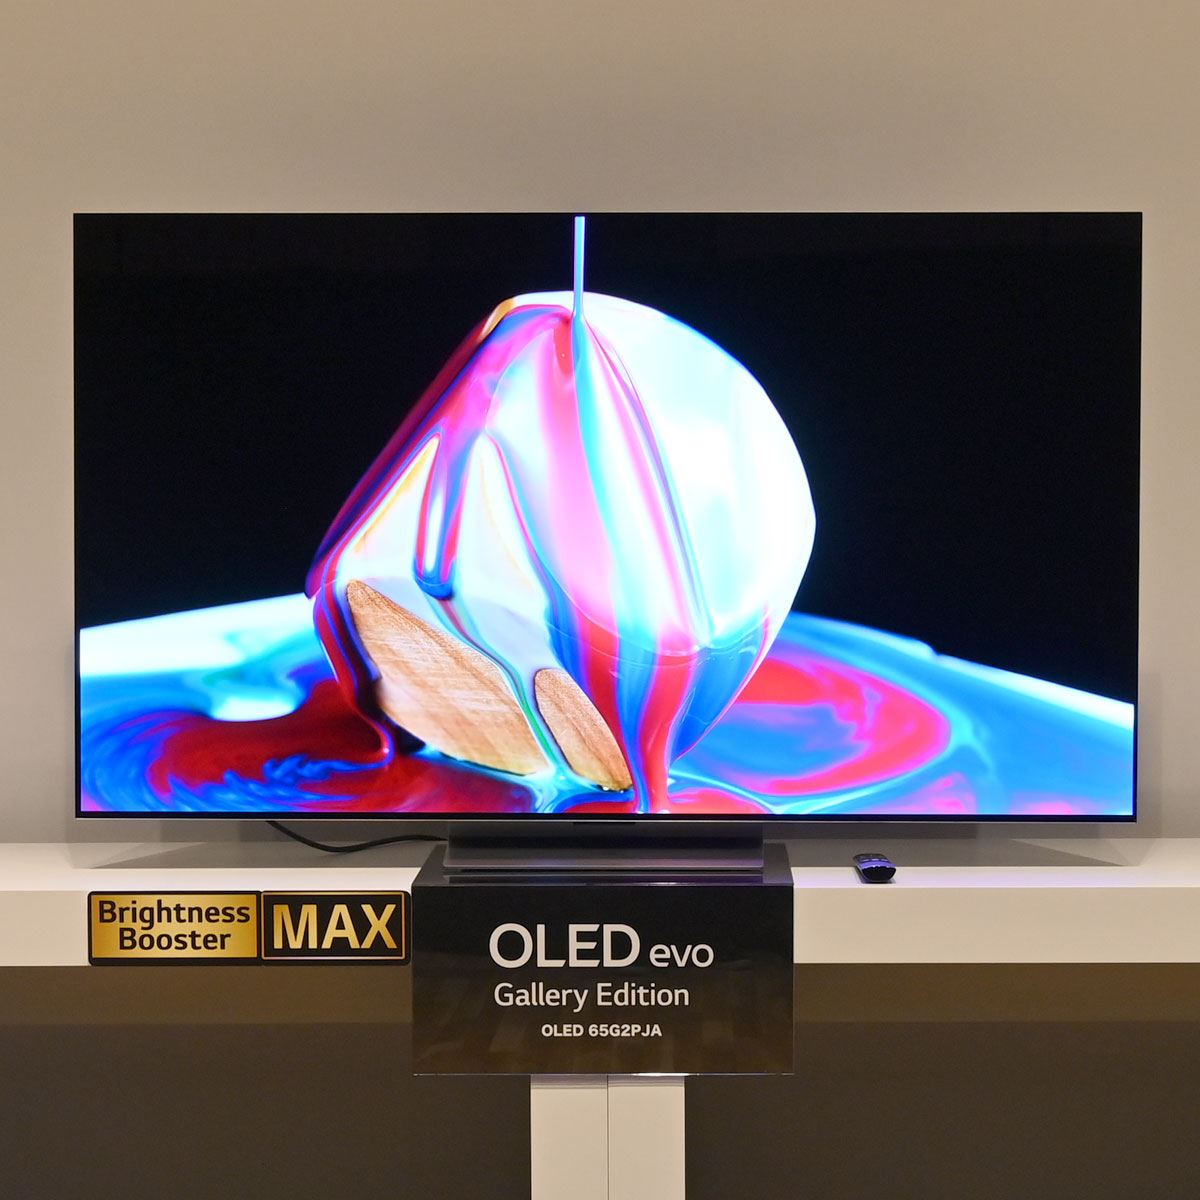 LGが4K有機EL/液晶テレビ2022年モデルを発表。有機も液晶も高性能 